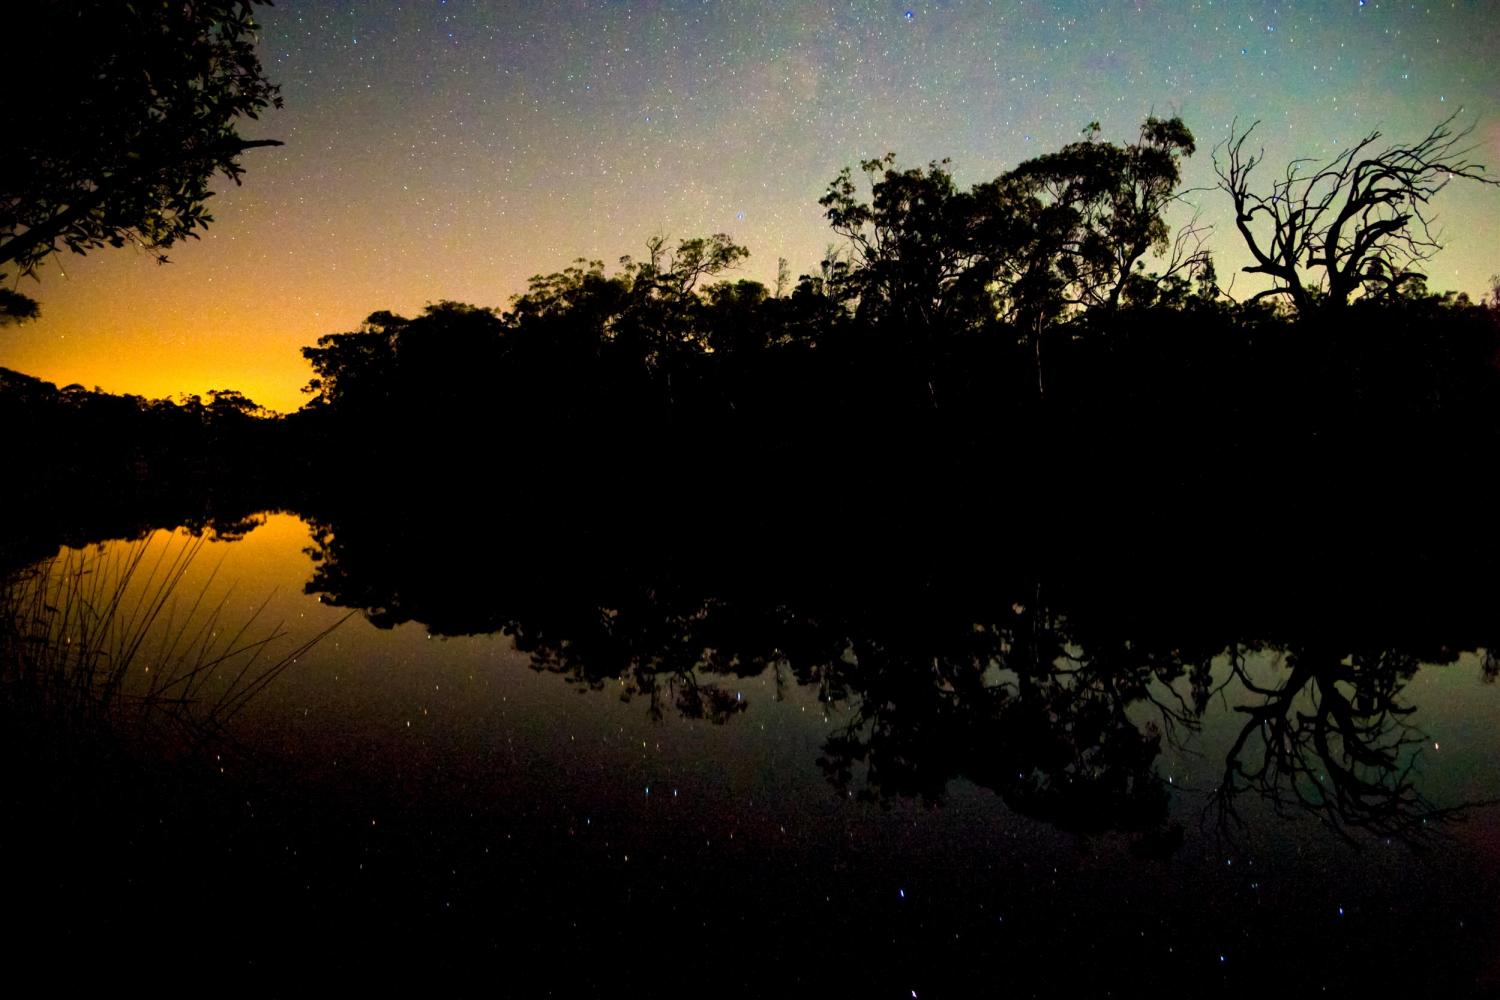 Noosa River at night.